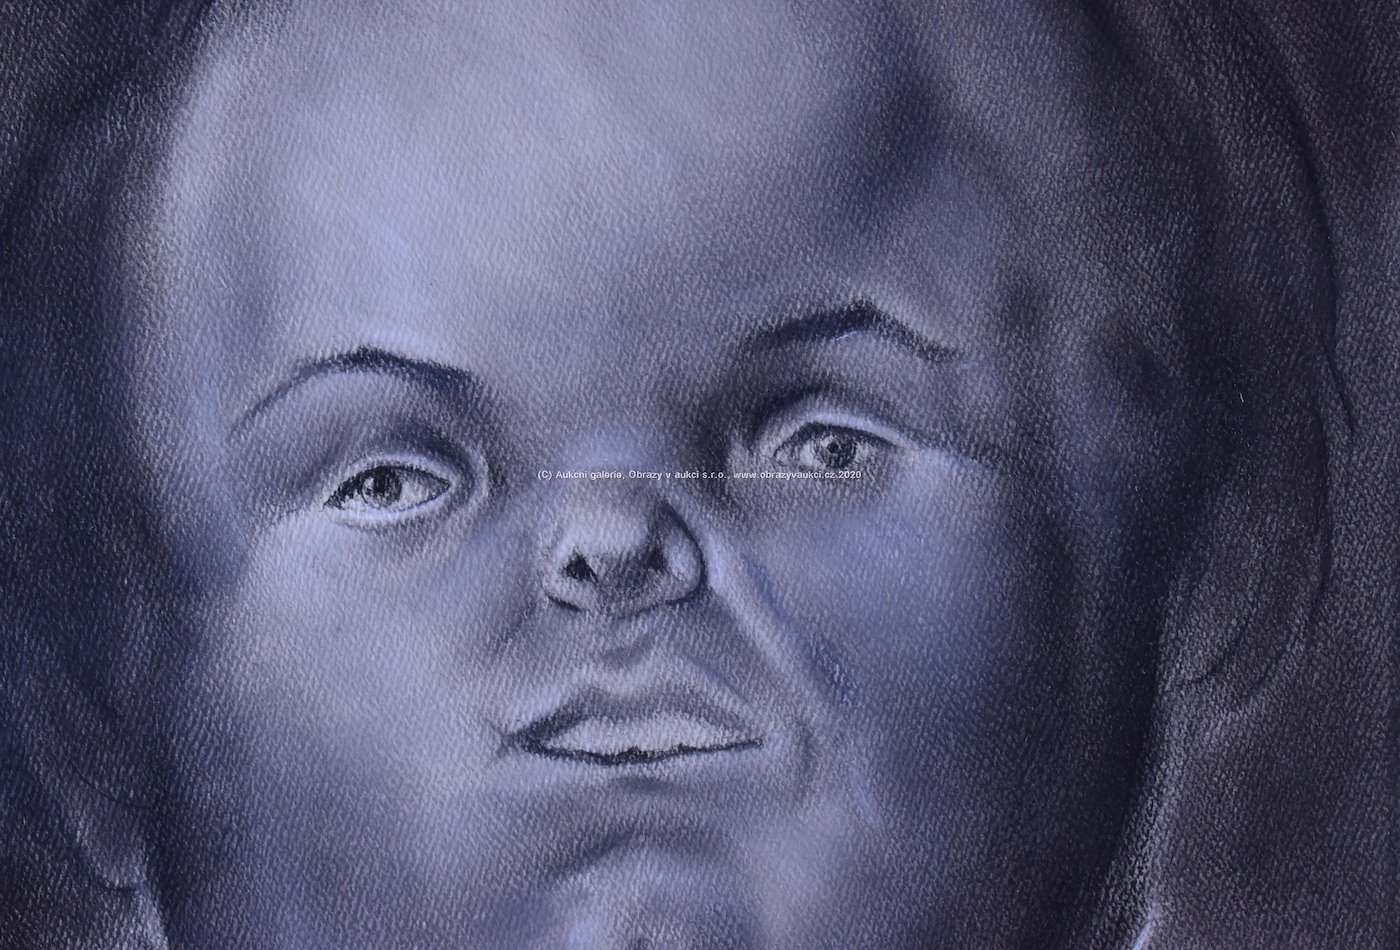 Fernando Botero - Dětský portrét